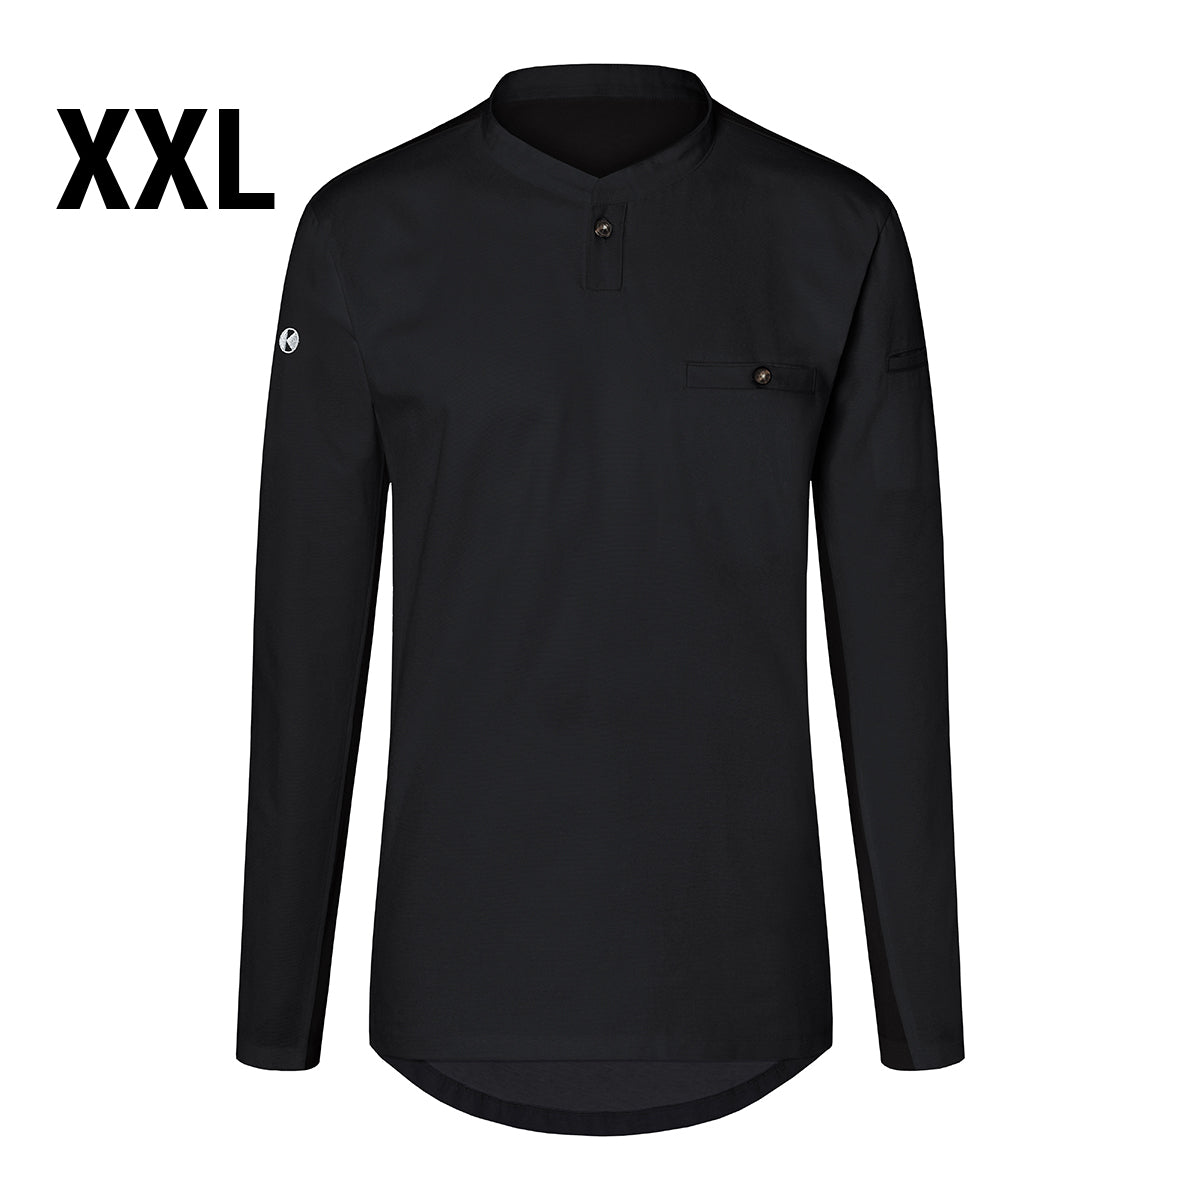 (6 stk) Karlowsky - Langærmet arbejdsskjorte til herrer Performance - Sort - Størrelse: 2XL